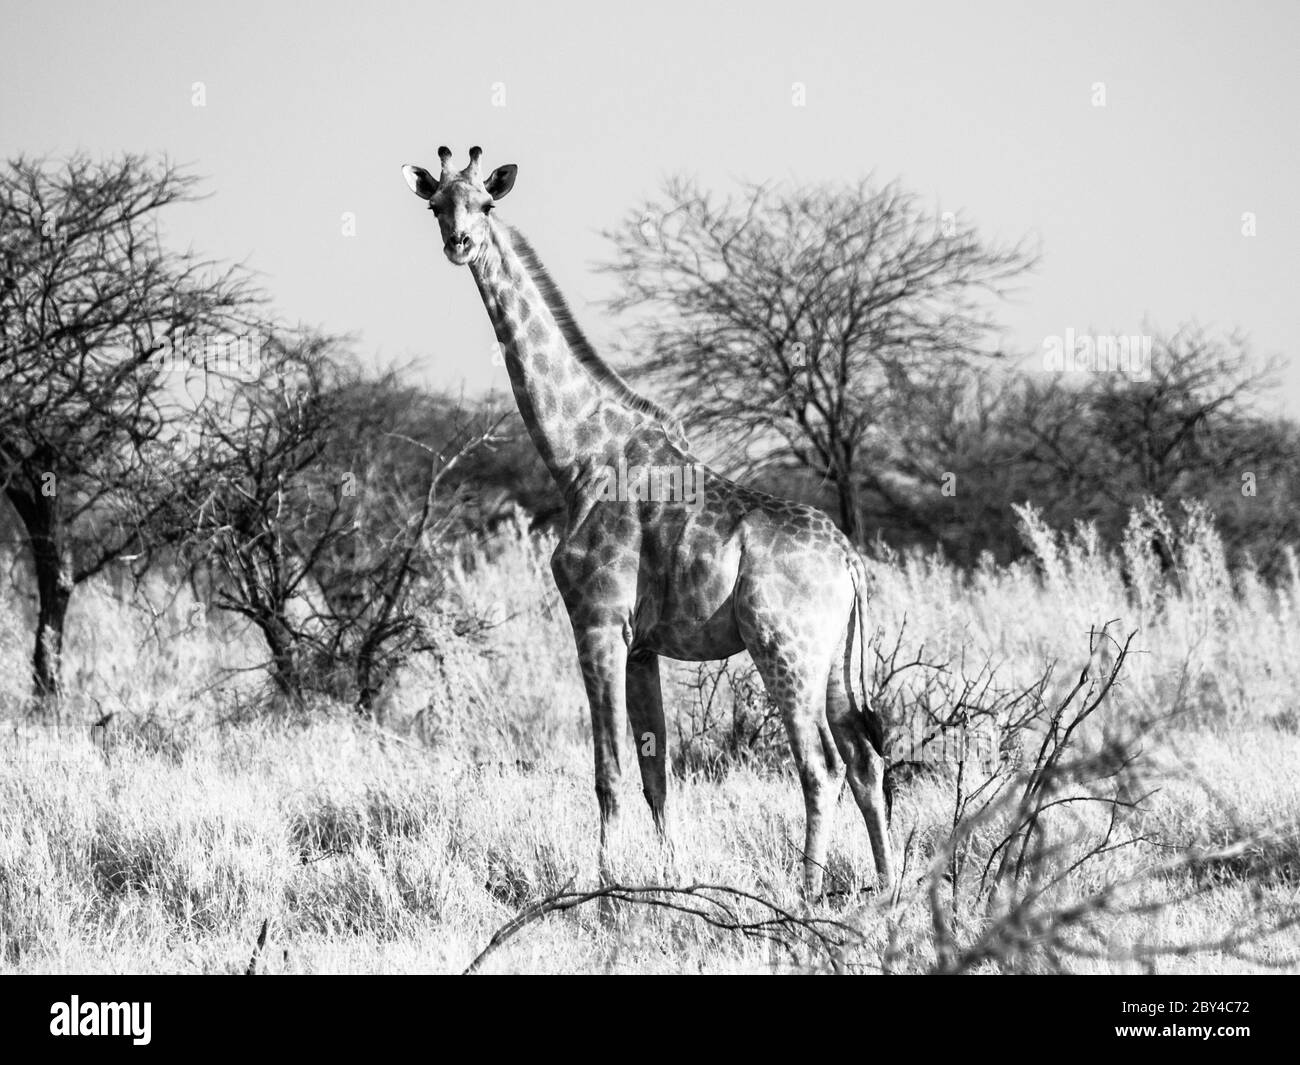 Girafe debout dans la savane. Scène africaine de safari de la faune dans le parc national d'Etosha, Namibie, Afrique. Image en noir et blanc. Banque D'Images